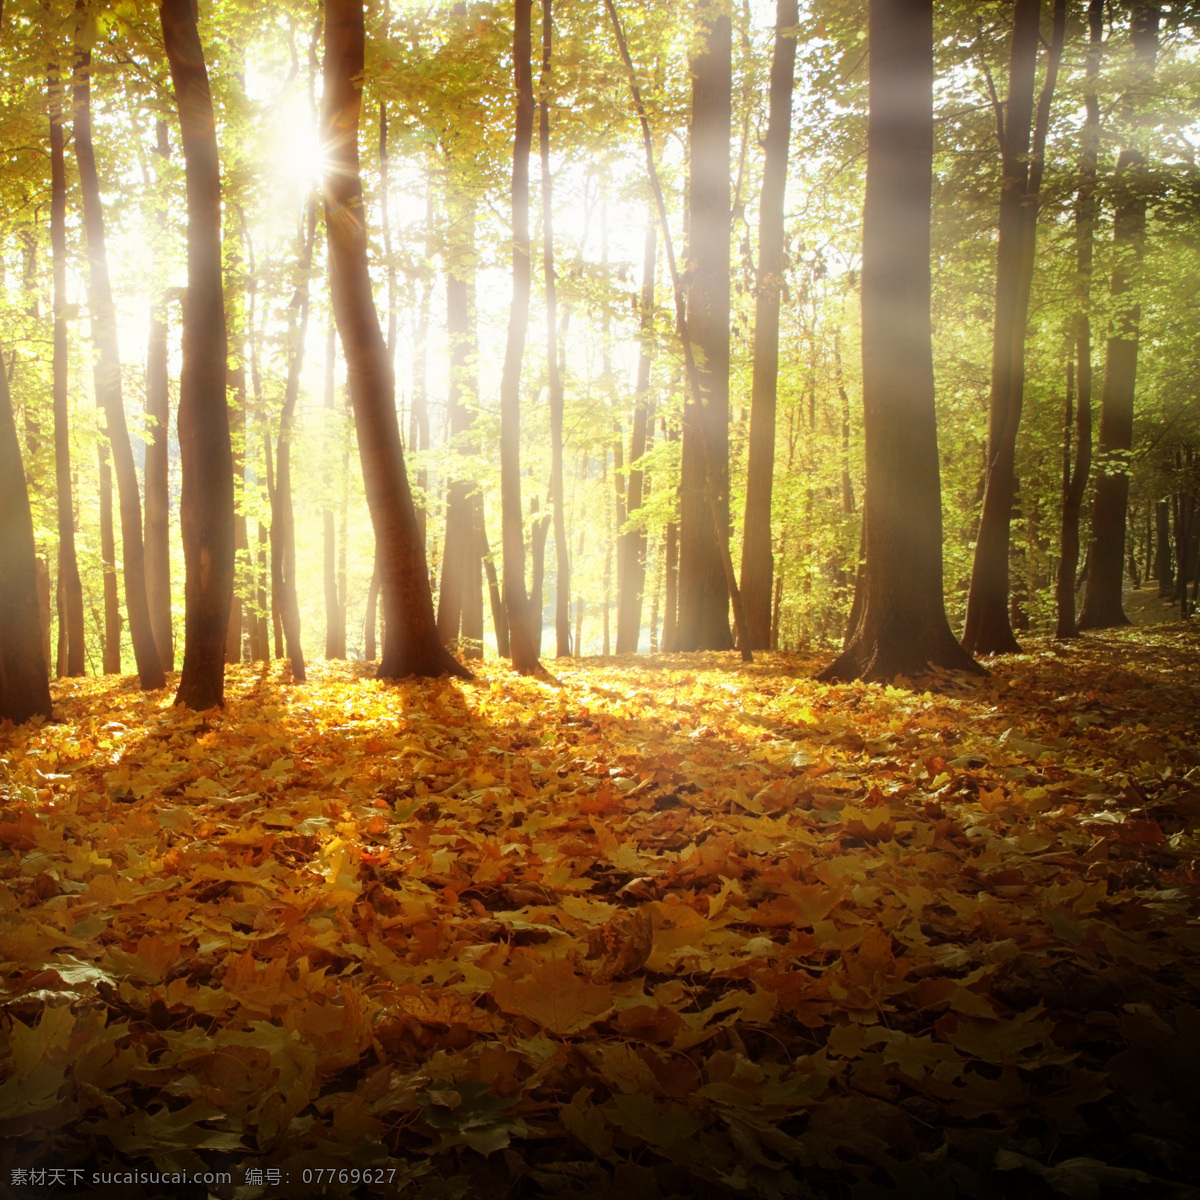 朦胧 美丽 秋日 树林 朦胧美丽 秋日树林 树木 落叶 山水风景 风景图片